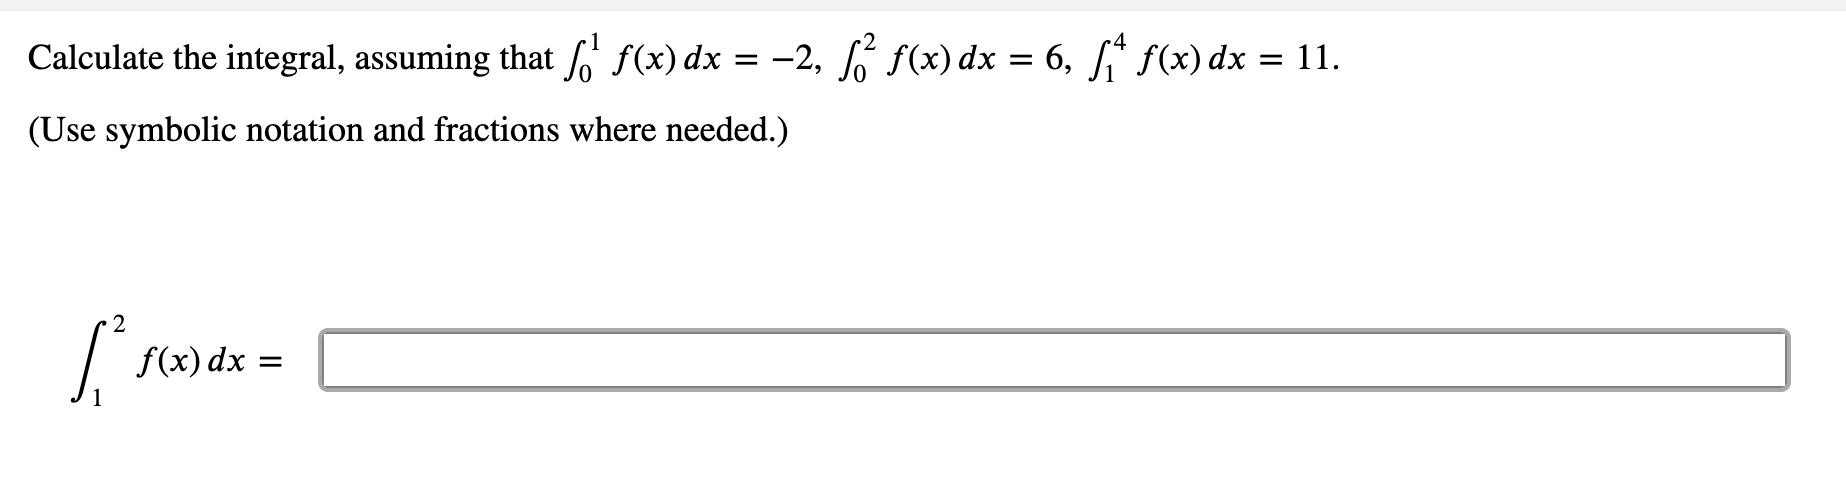 Solved A) ∫13f(x)dx= B) ∫34f(x)dx= C) ∫14f(x)dx= D) Suppose